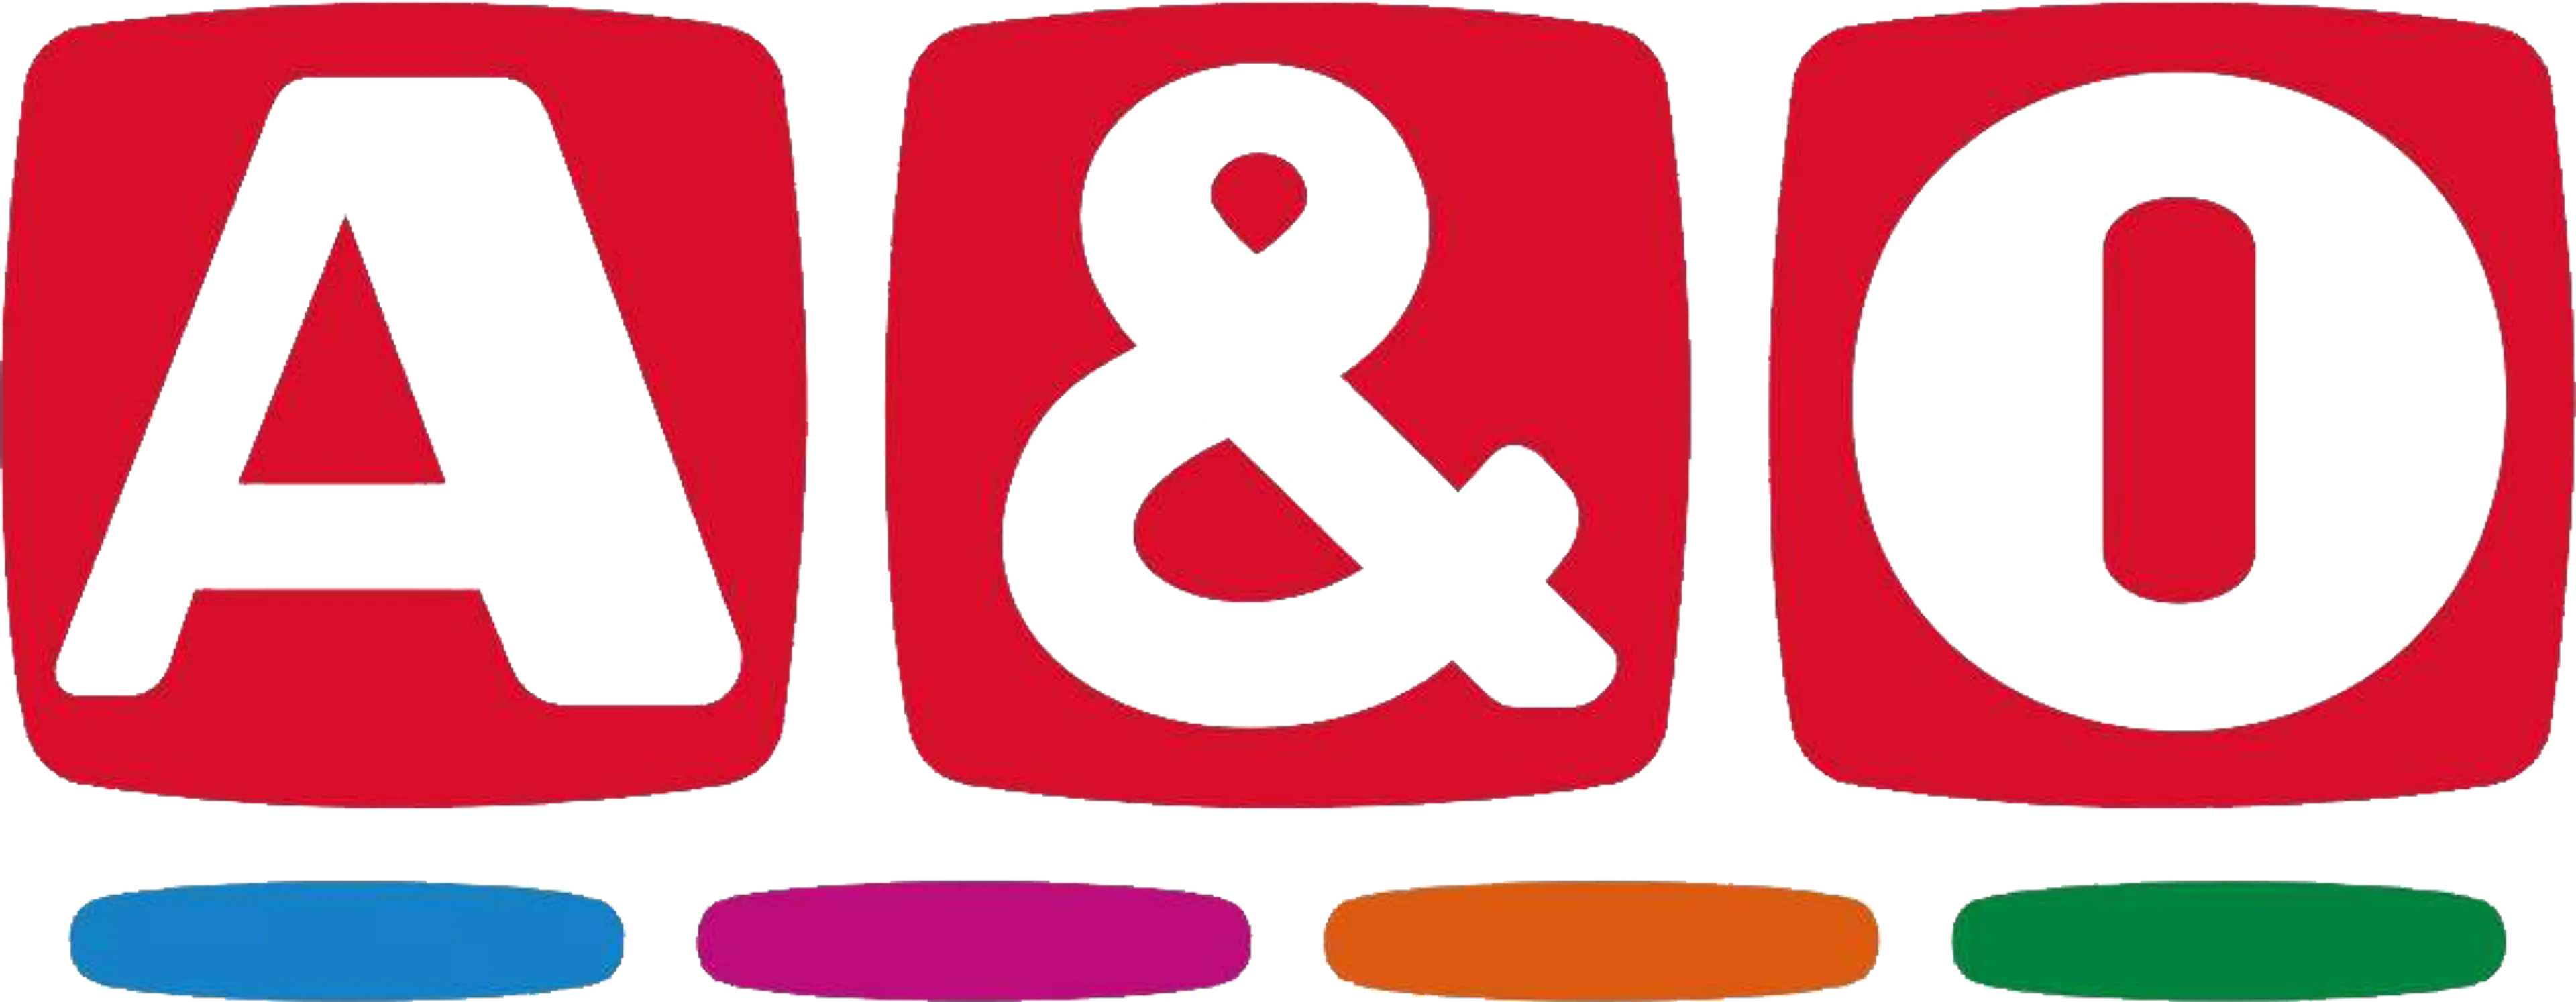 A&O logo